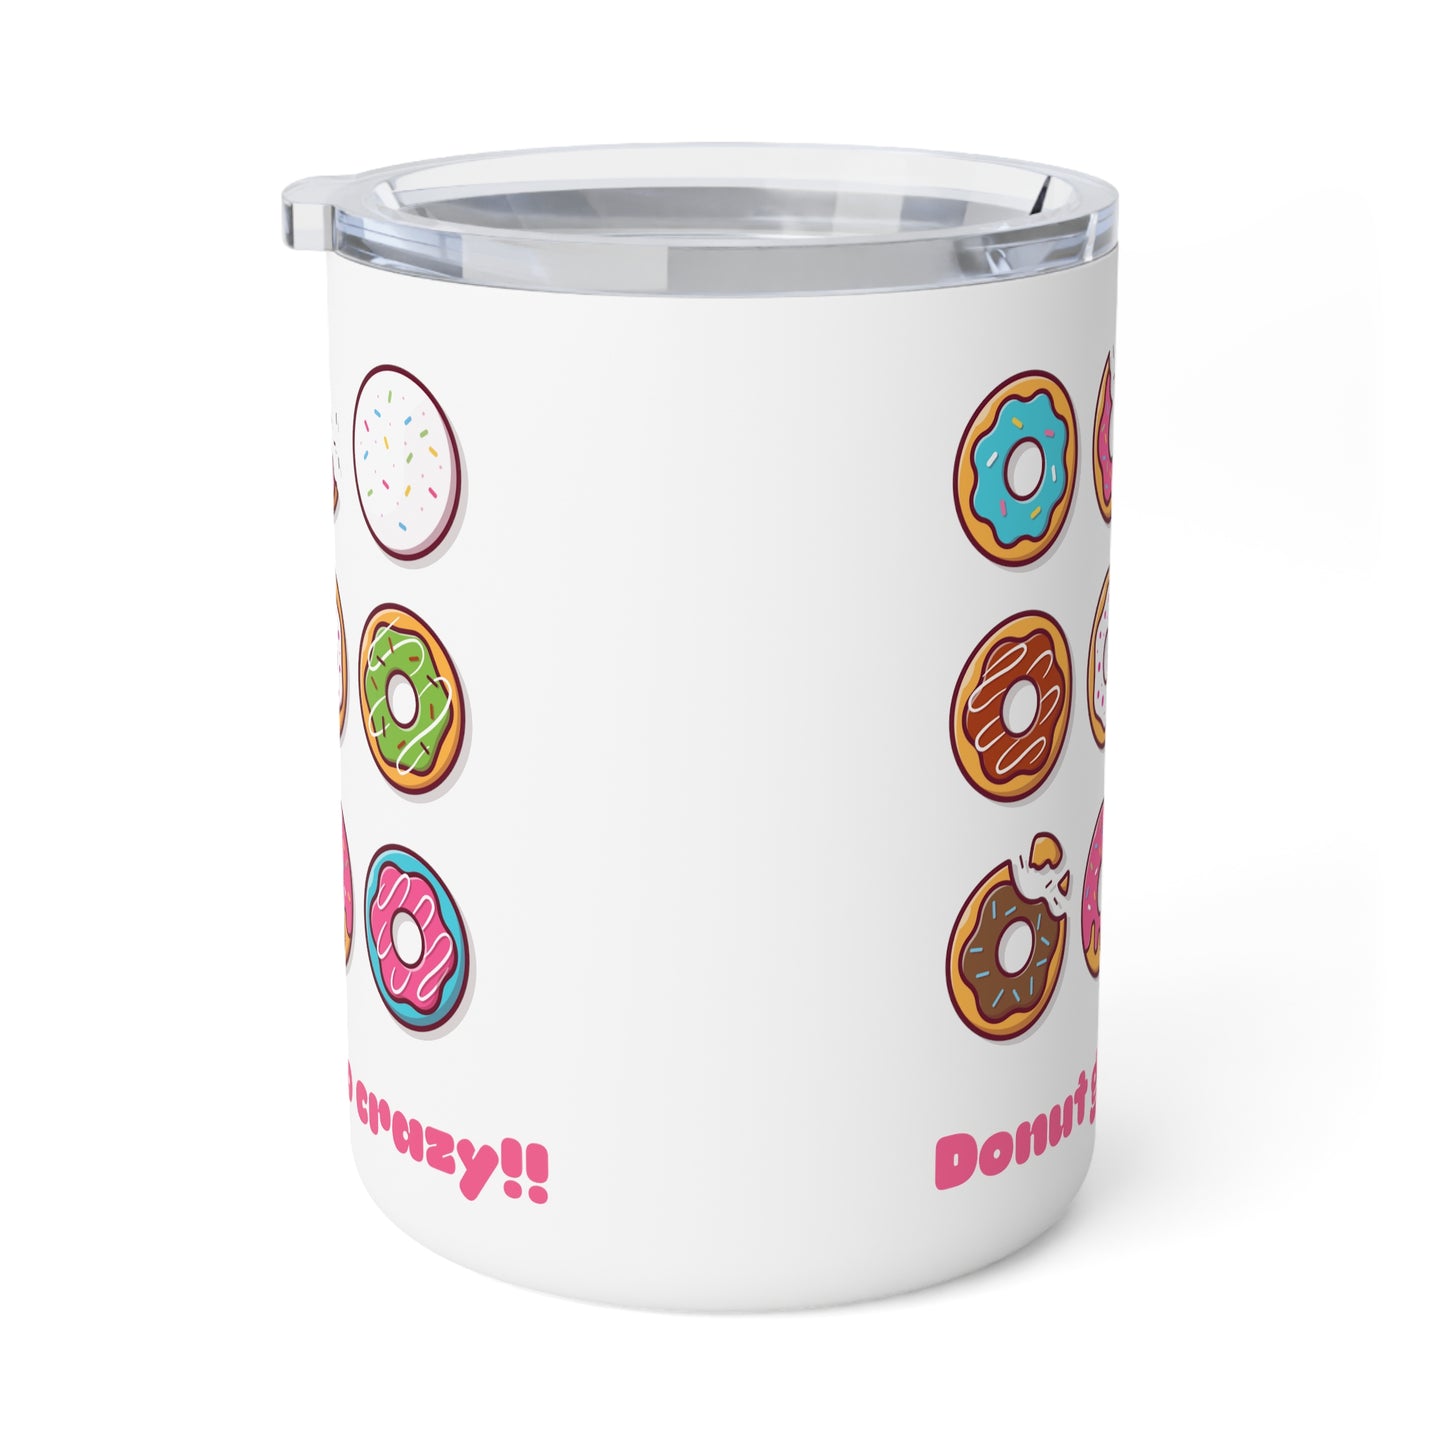 Donut go crazy! Insulated Coffee Mug, 10oz